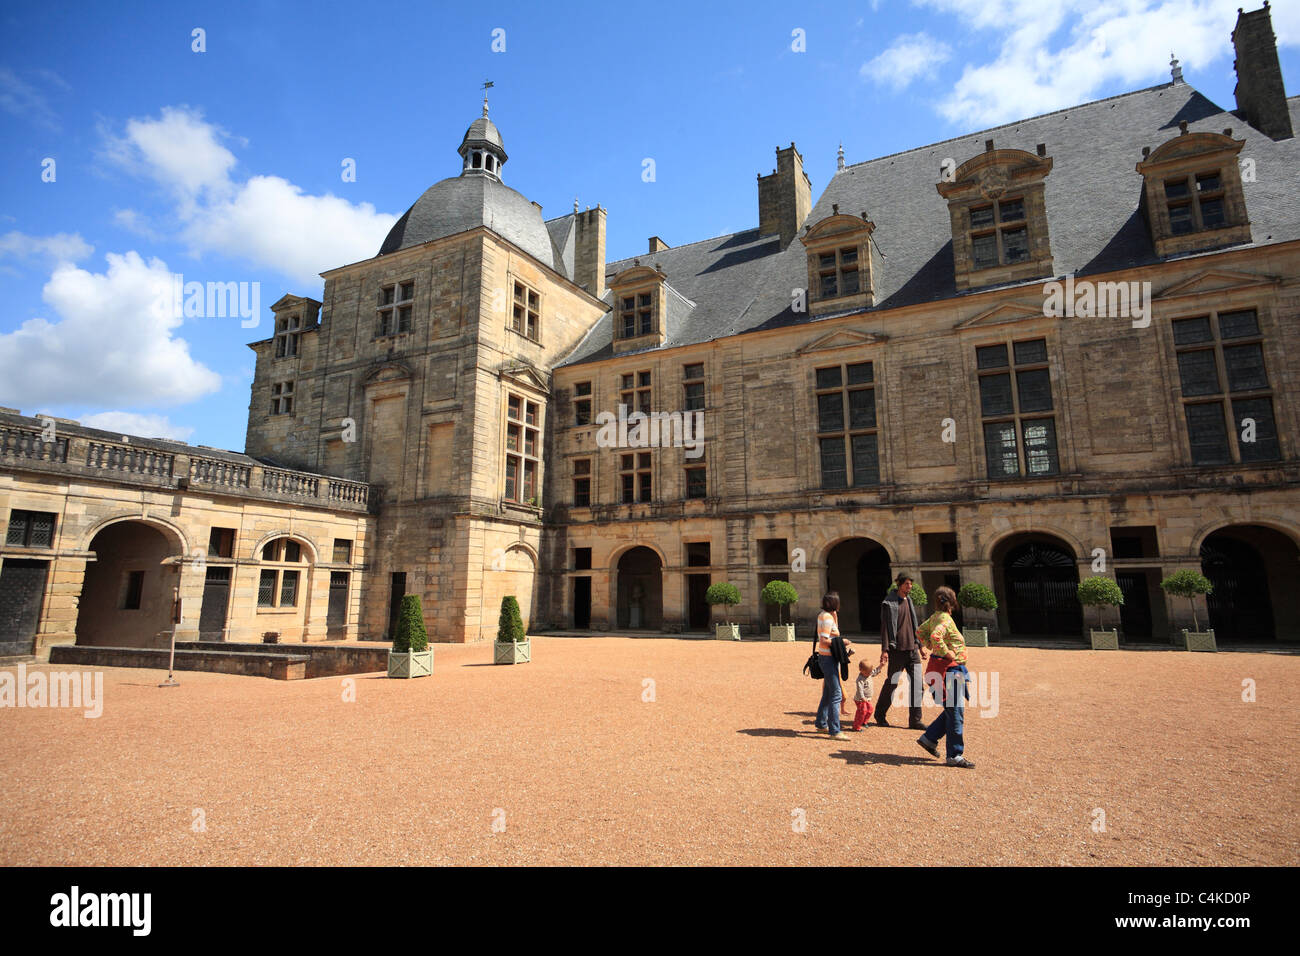 Renaiissance Chateau de Hautefort Dordogne Aquitaine France Stock Photo